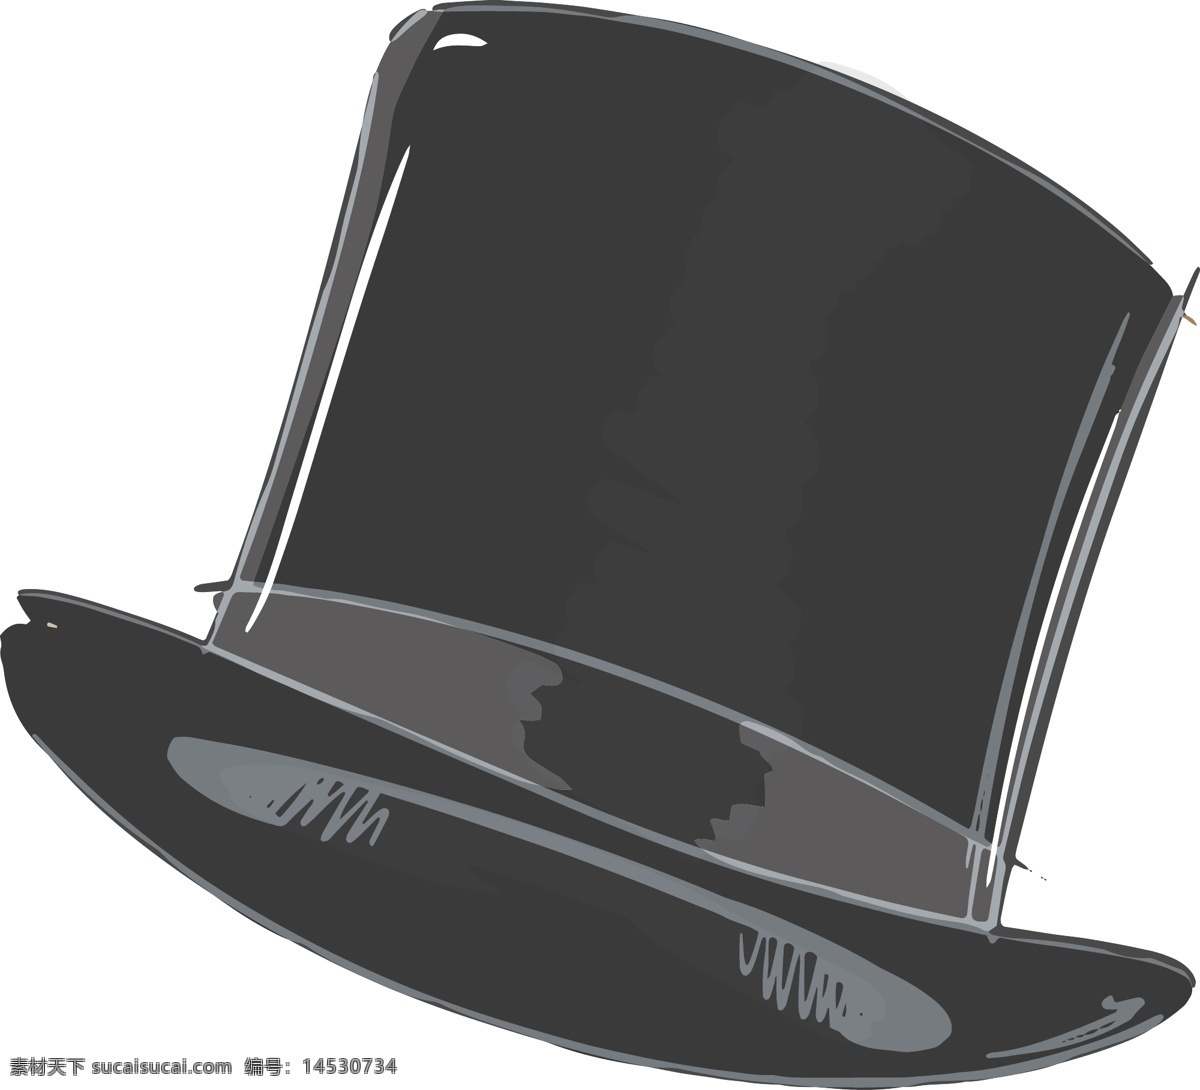 魔术 帽子 卡通 矢量 黑白 平面素材 设计素材 矢量素材 艺术